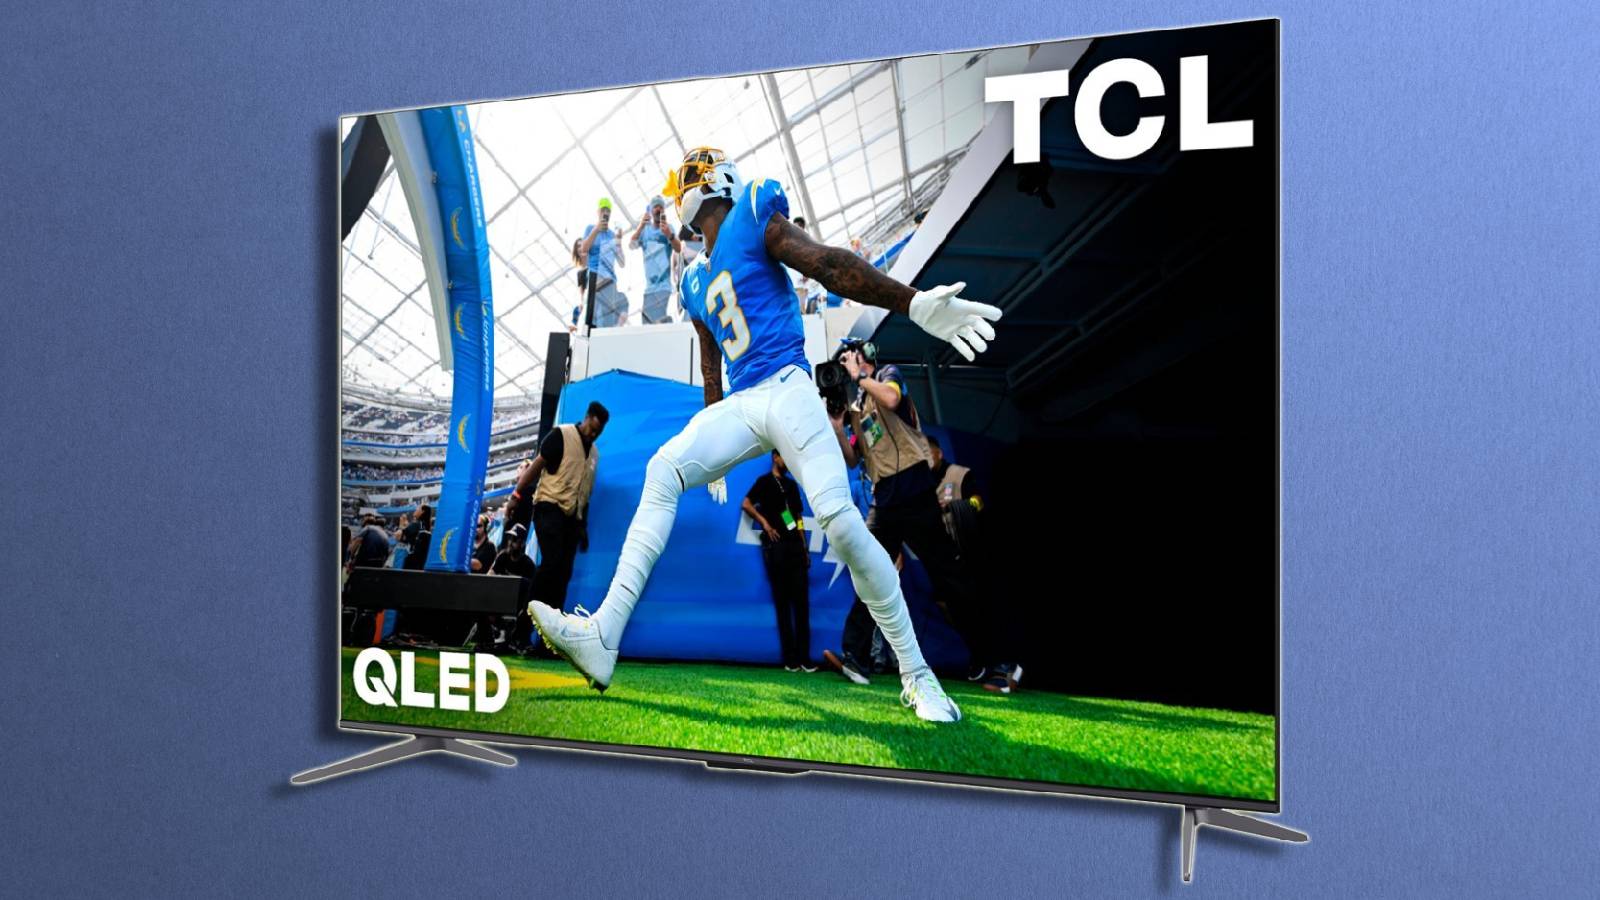 TCL 4K QLED TV